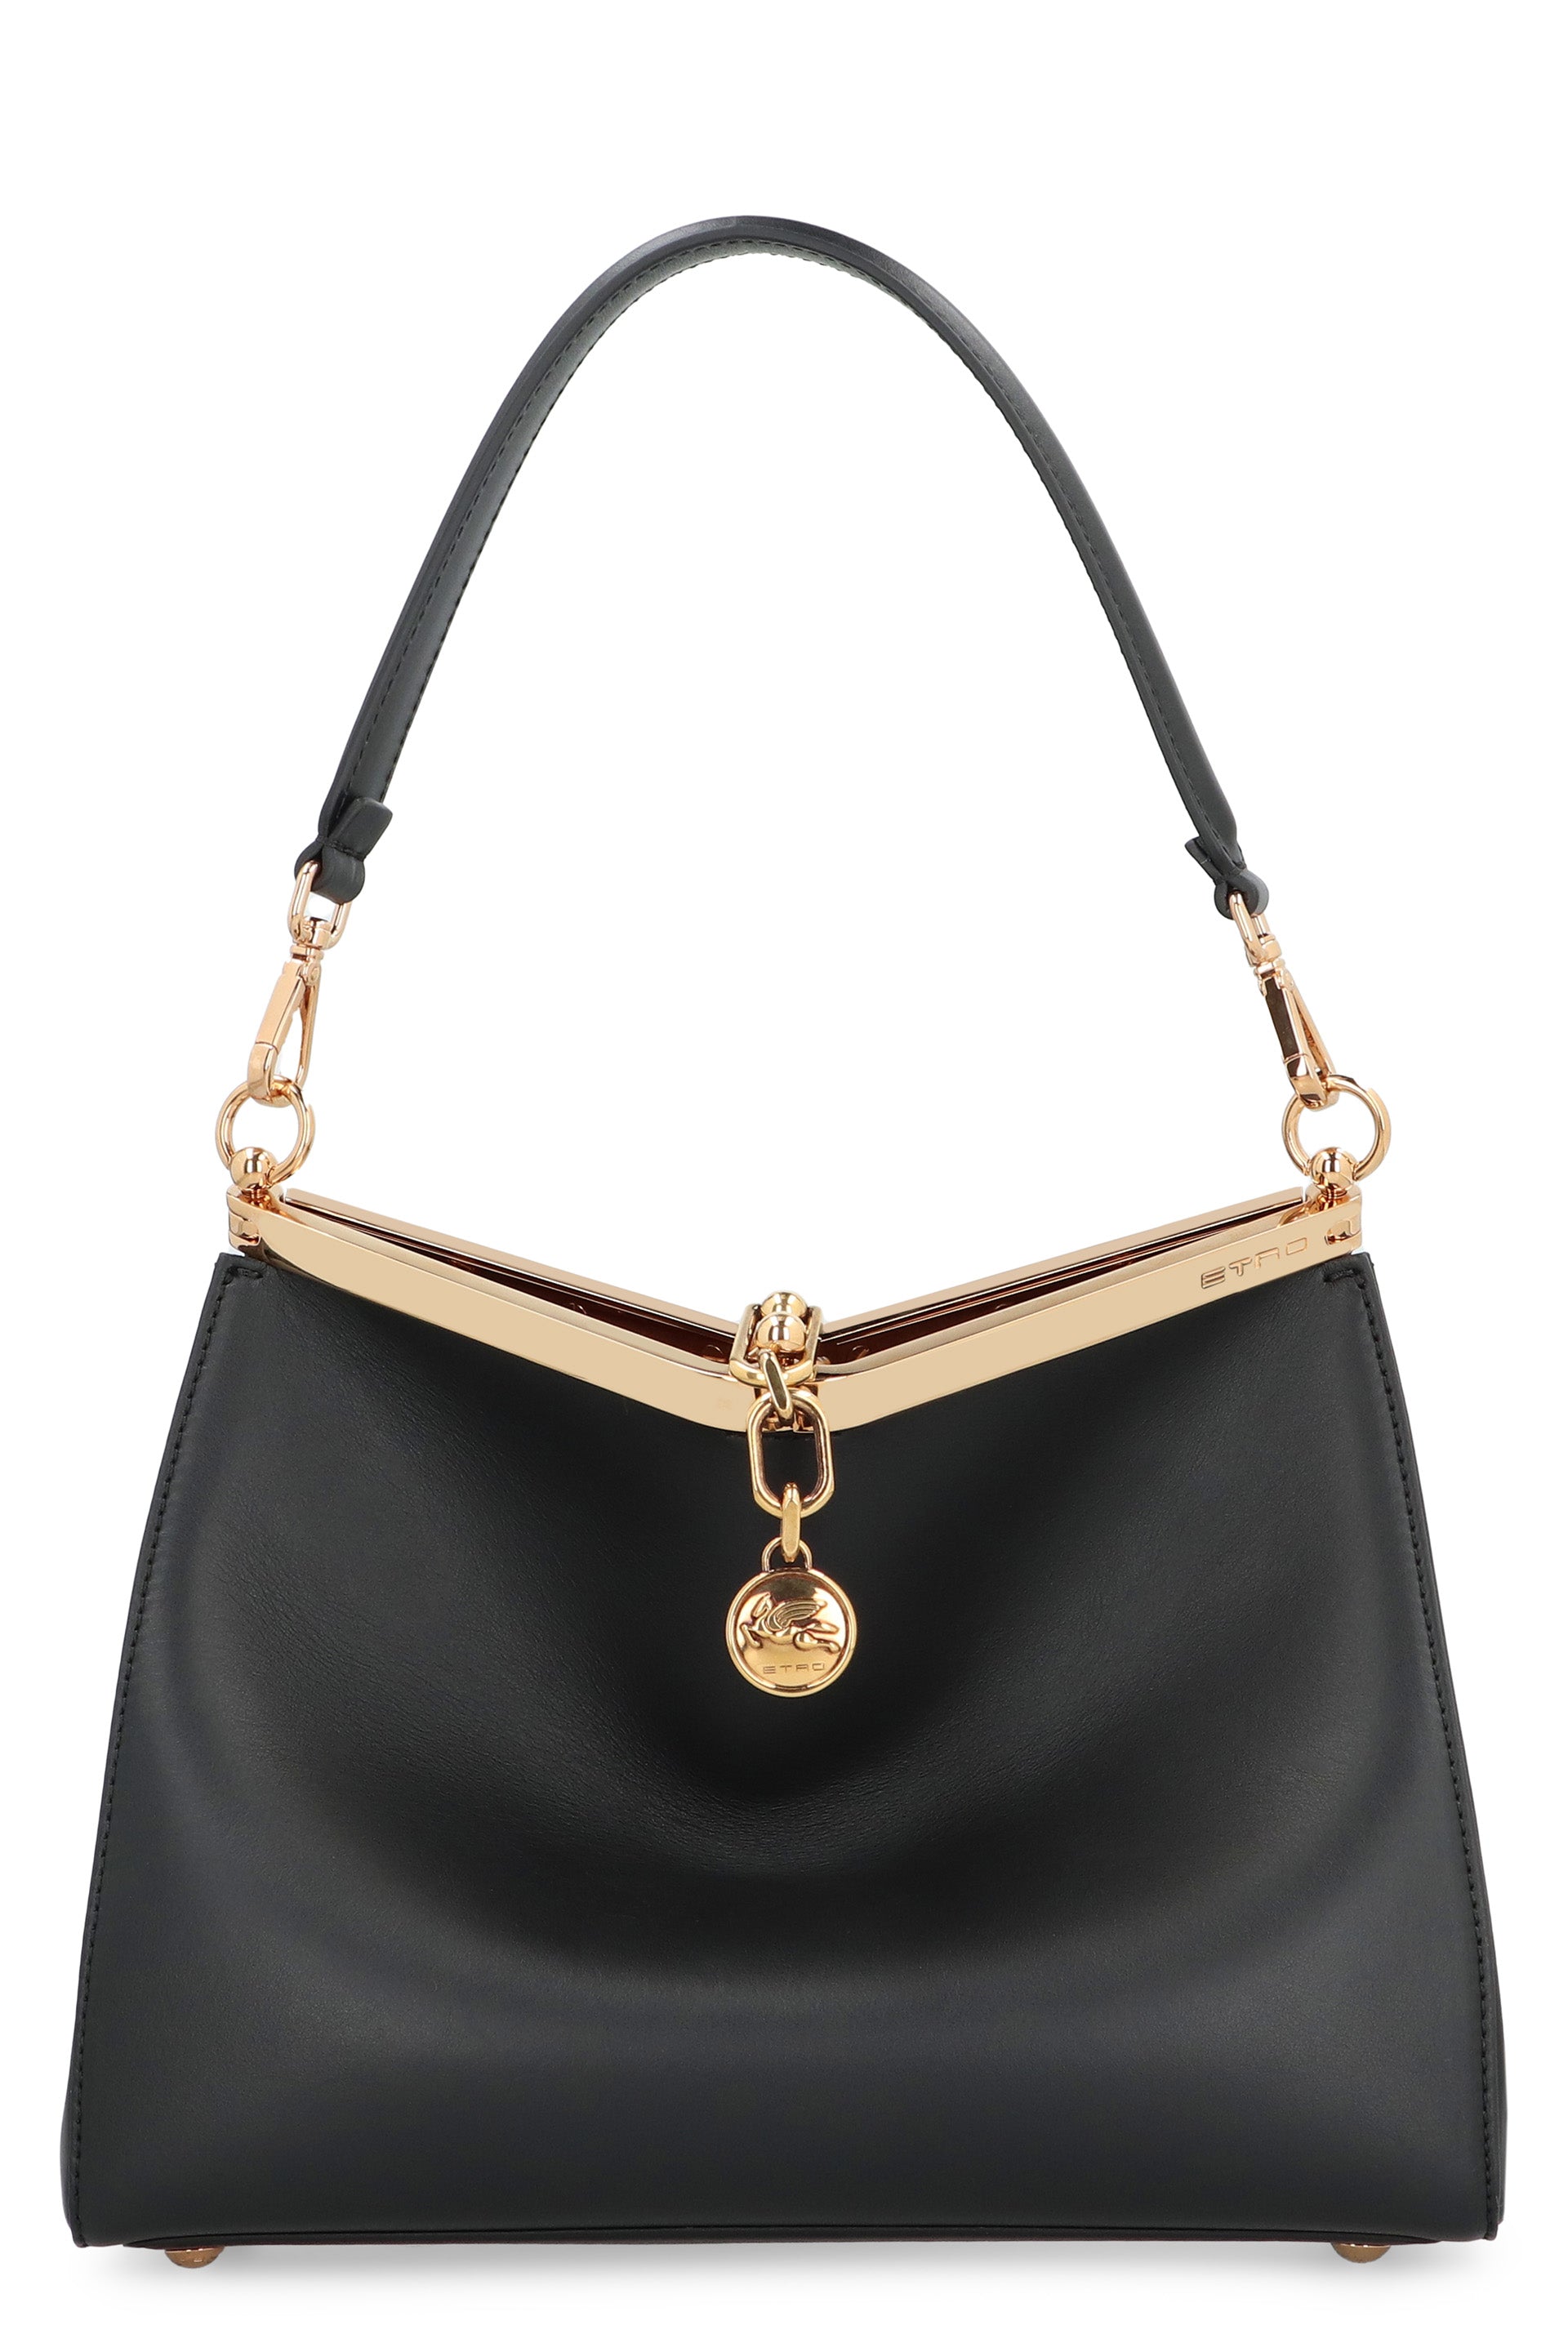 Shop Etro Sleek And Sophisticated Shoulder Handbag For Women In Black